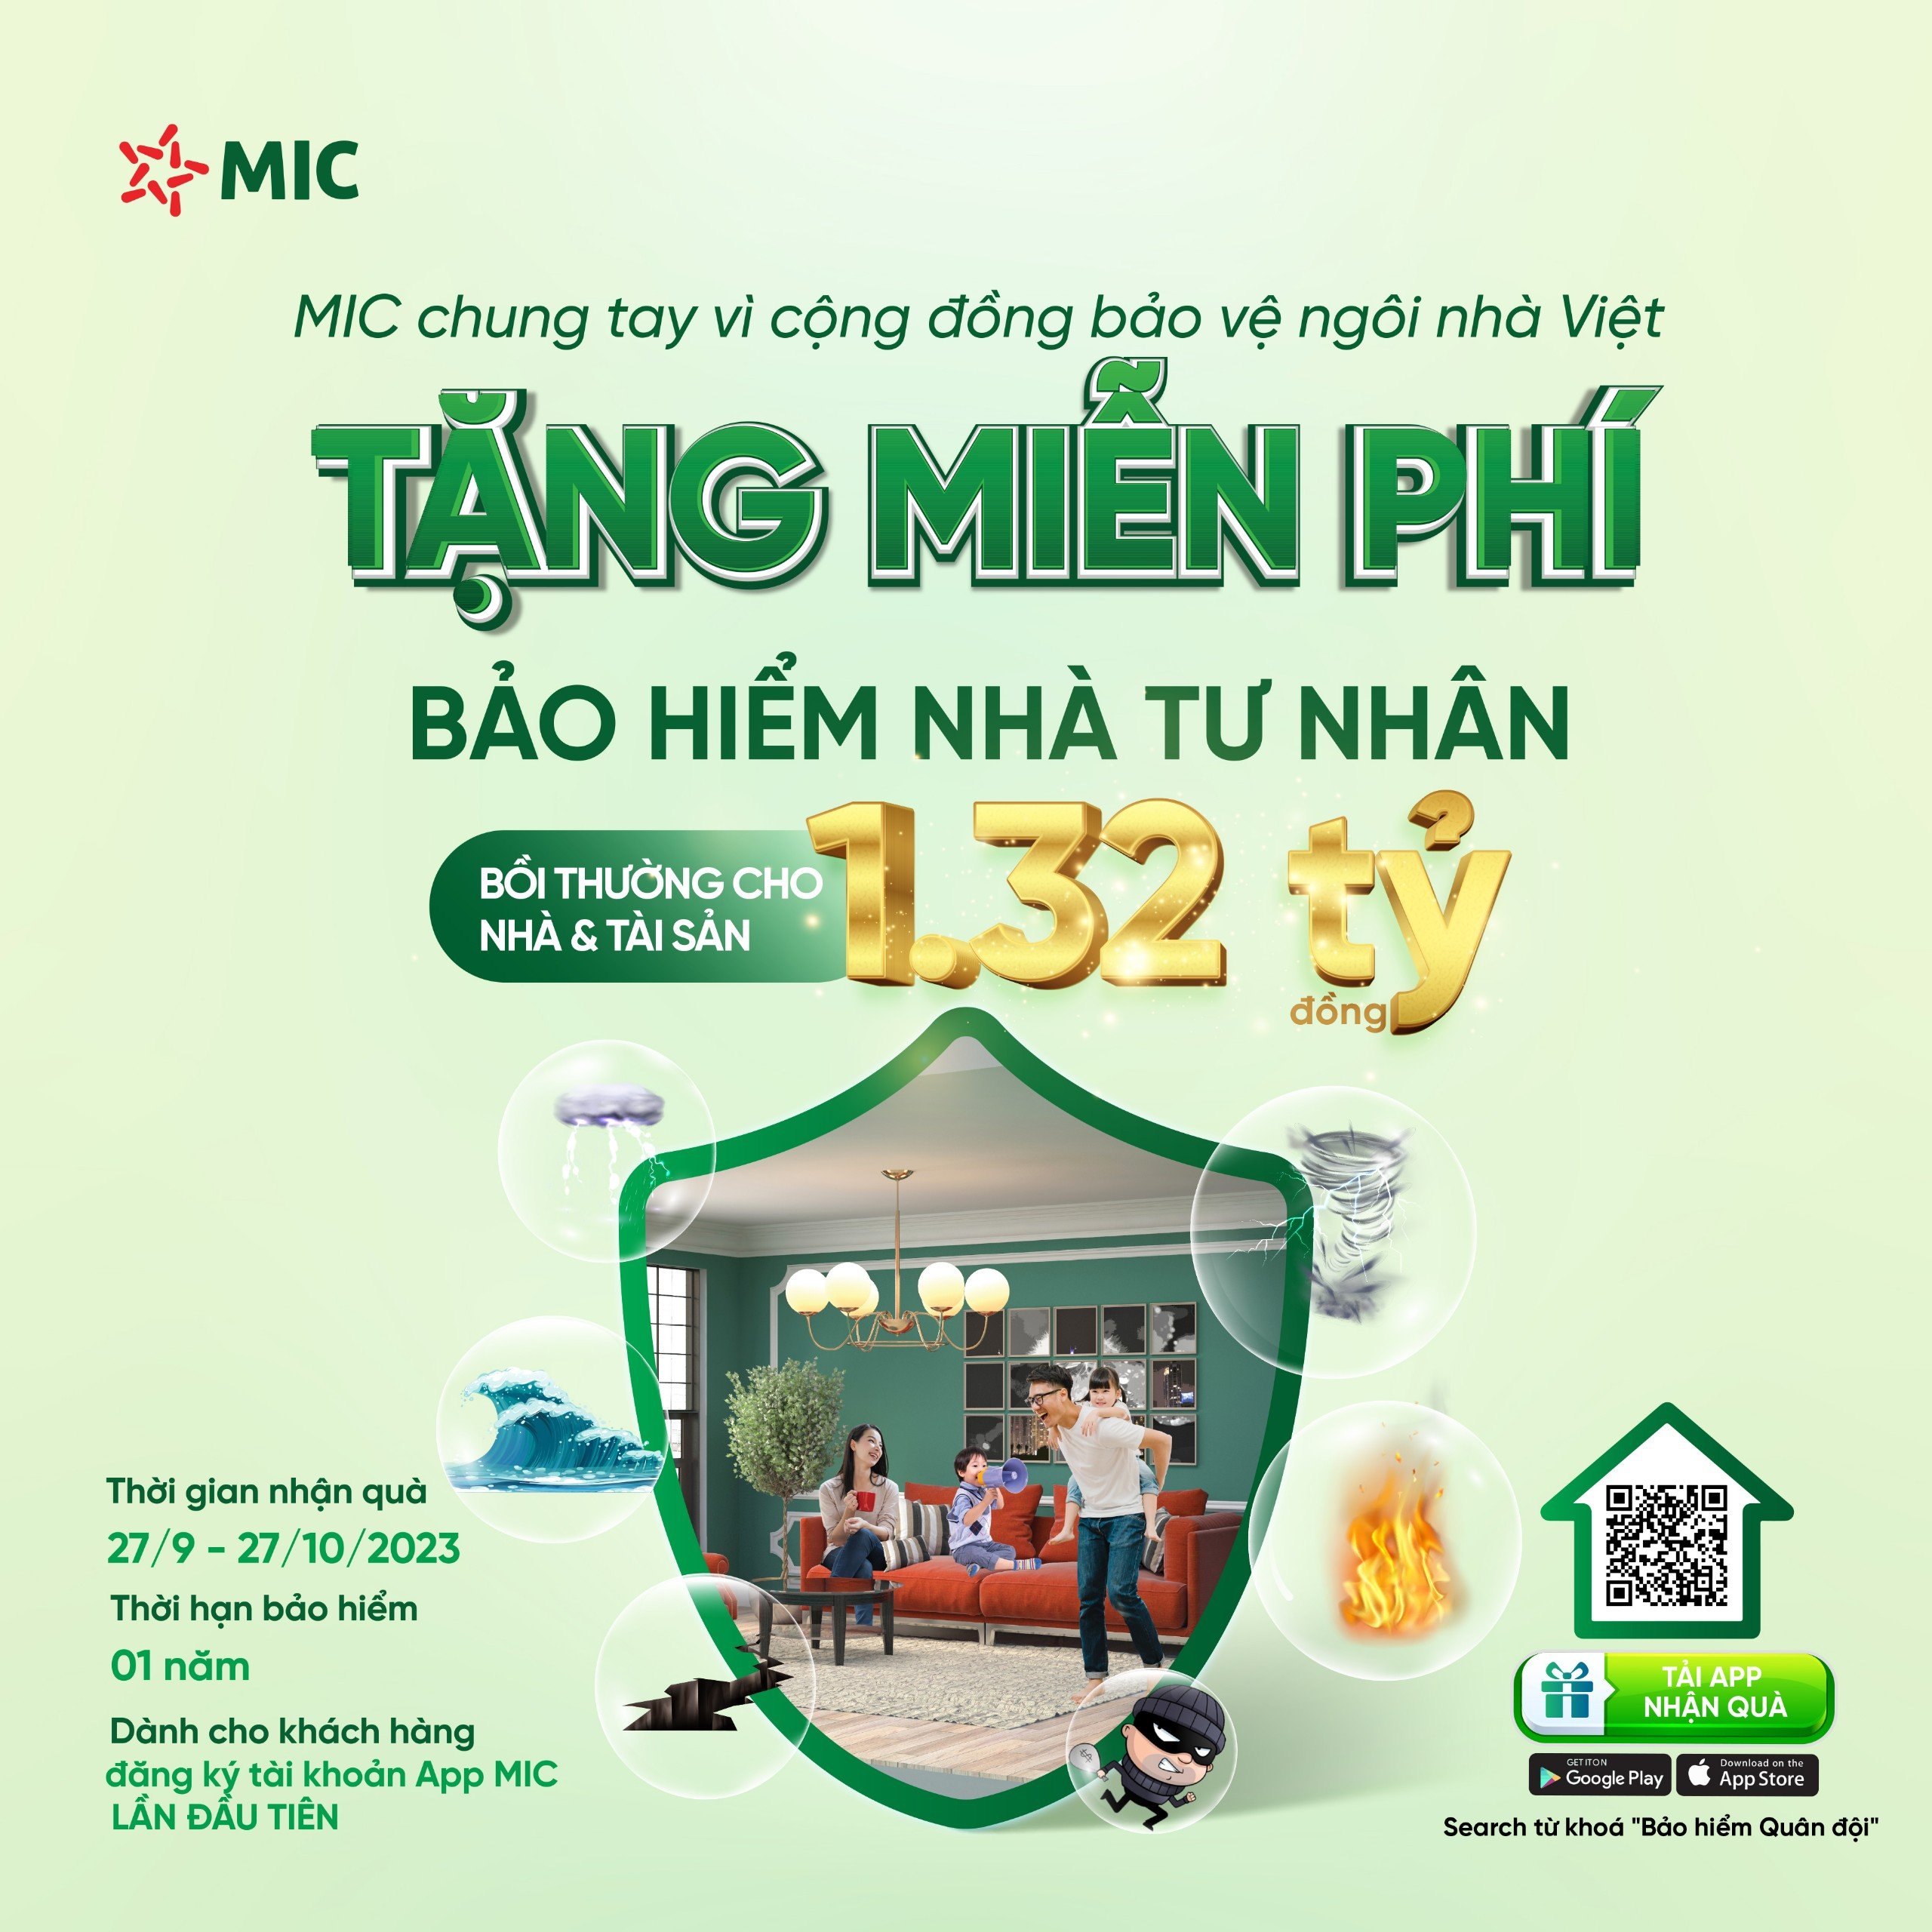 Bảo hiểm Quân đội triển khai chiến dịch tặng miễn phí bảo hiểm “bảo vệ ngôi nhà Việt” với quyền lợi 1,32 tỷ đồng